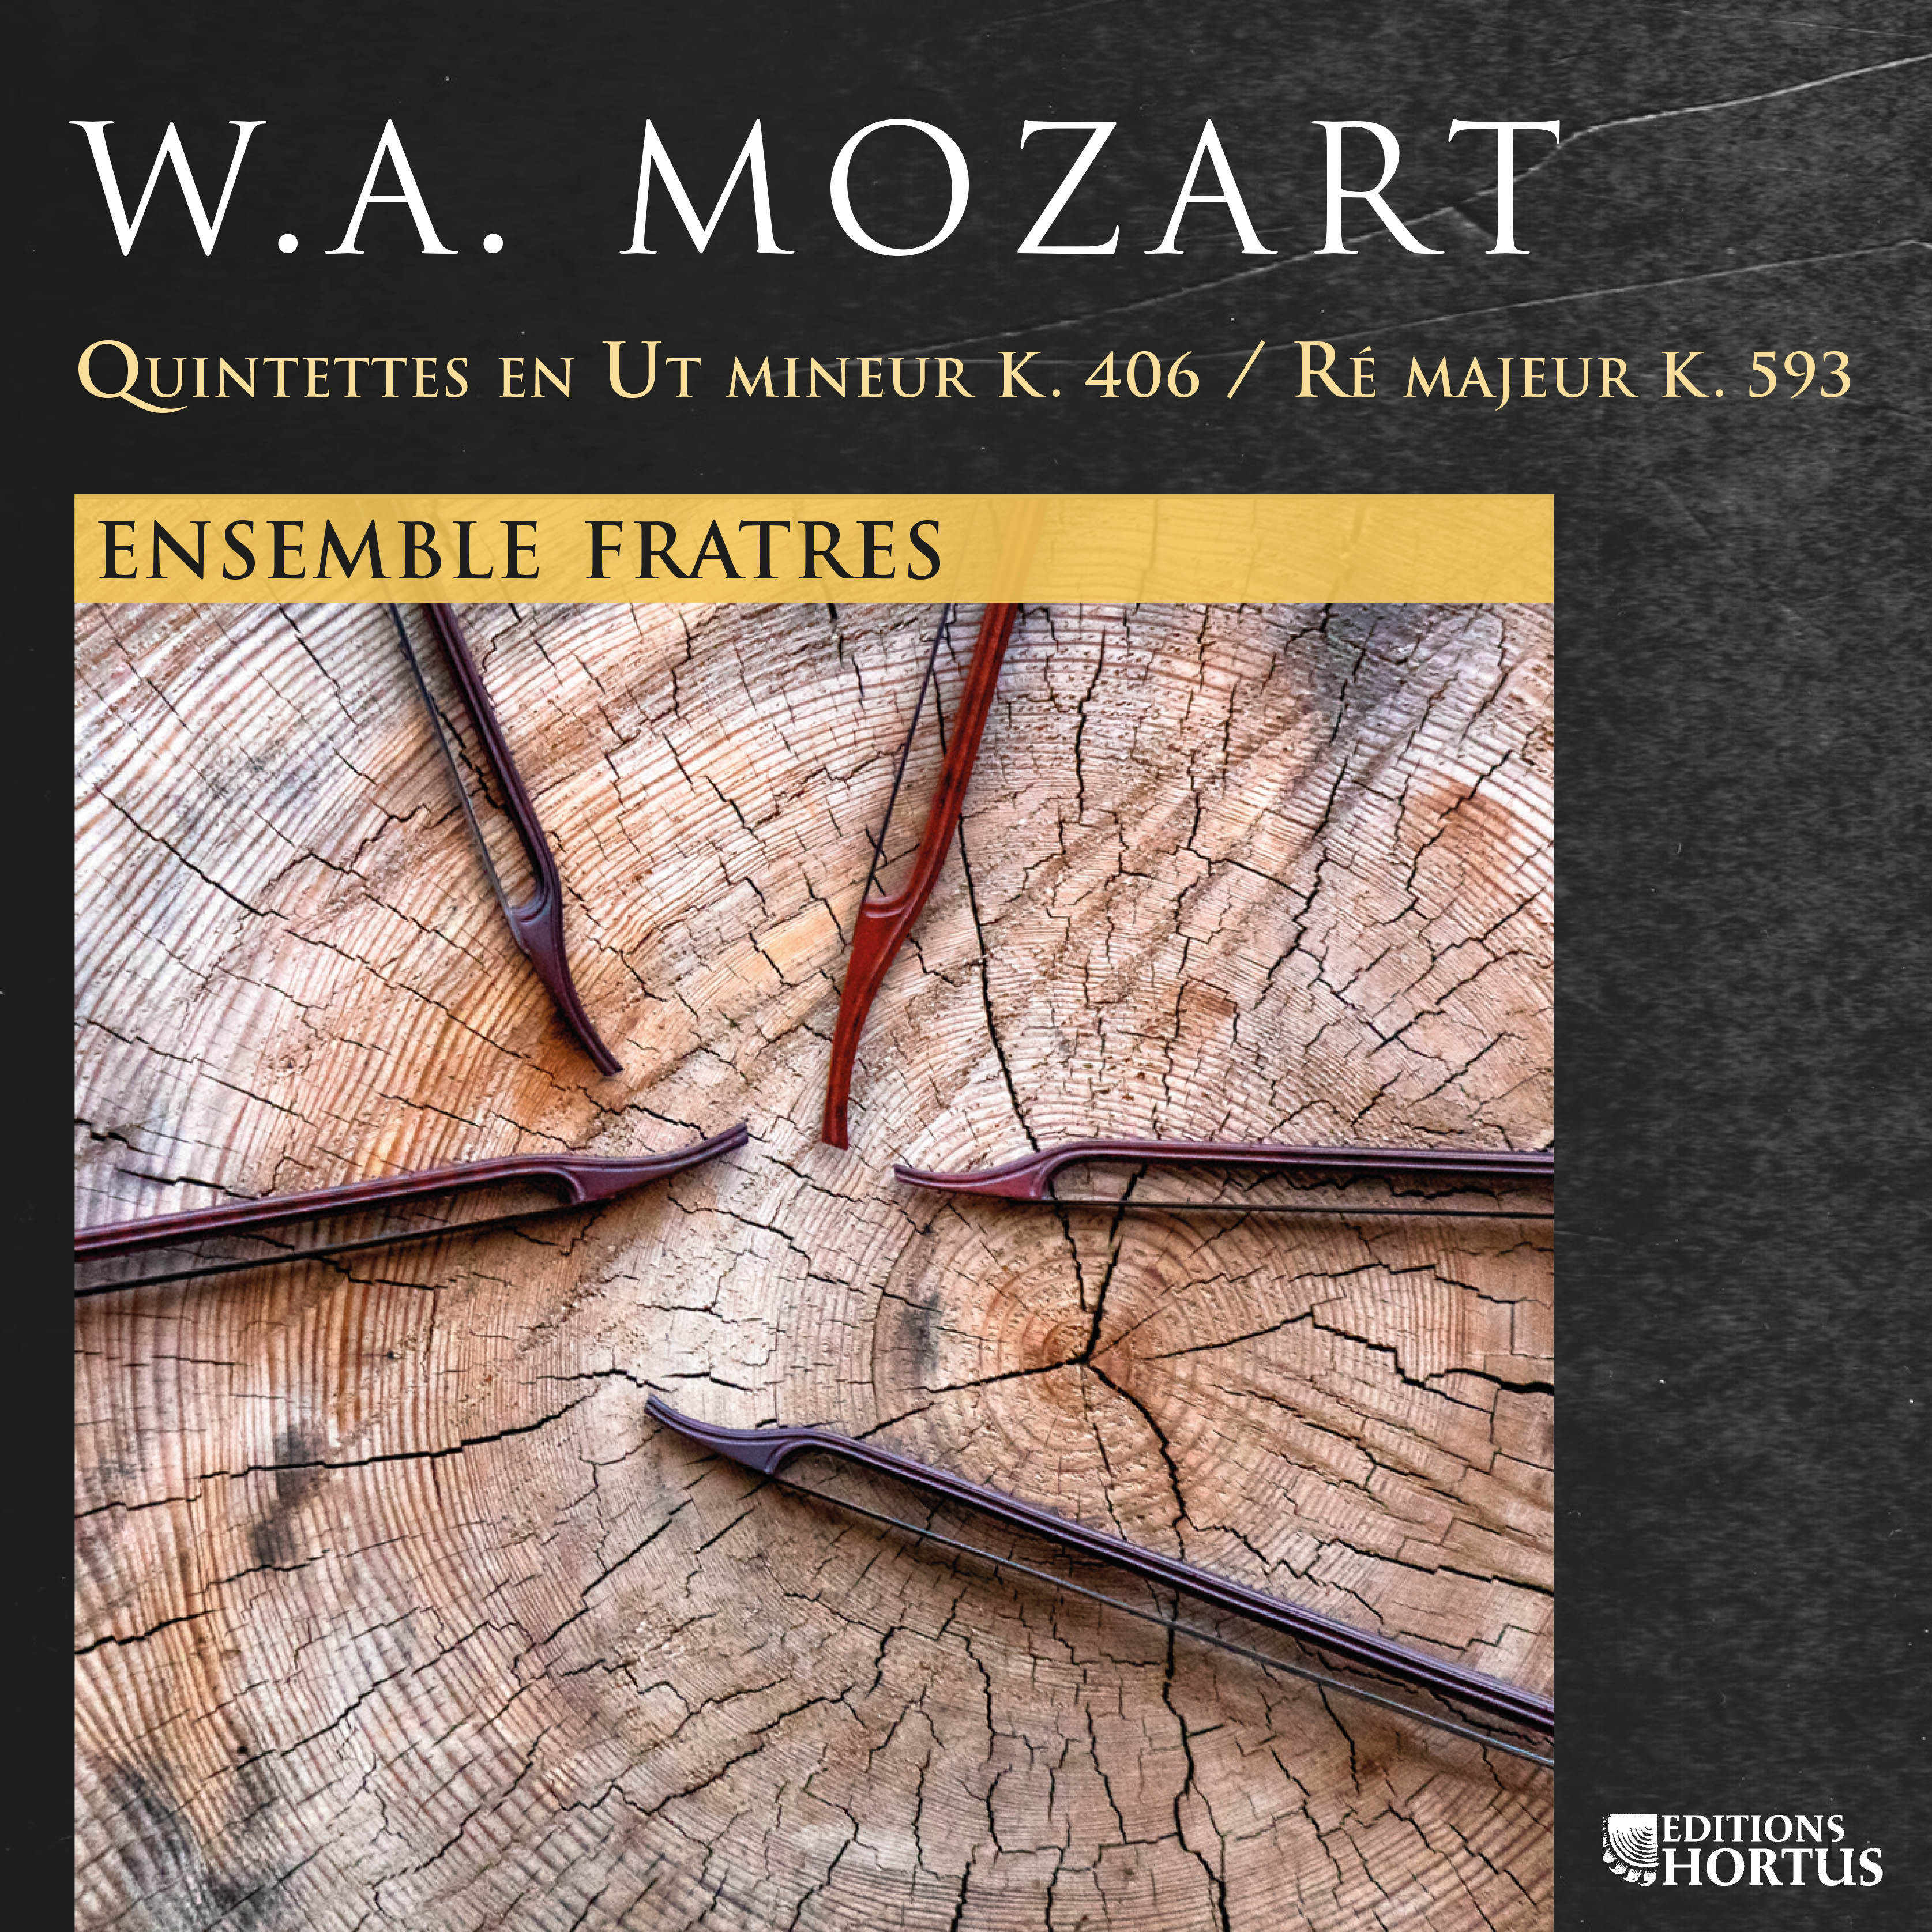 Ensemble Fratres – Mozart Quintettes K. 406 et K. 593 (2020) [FLAC 24bit/96kHz]